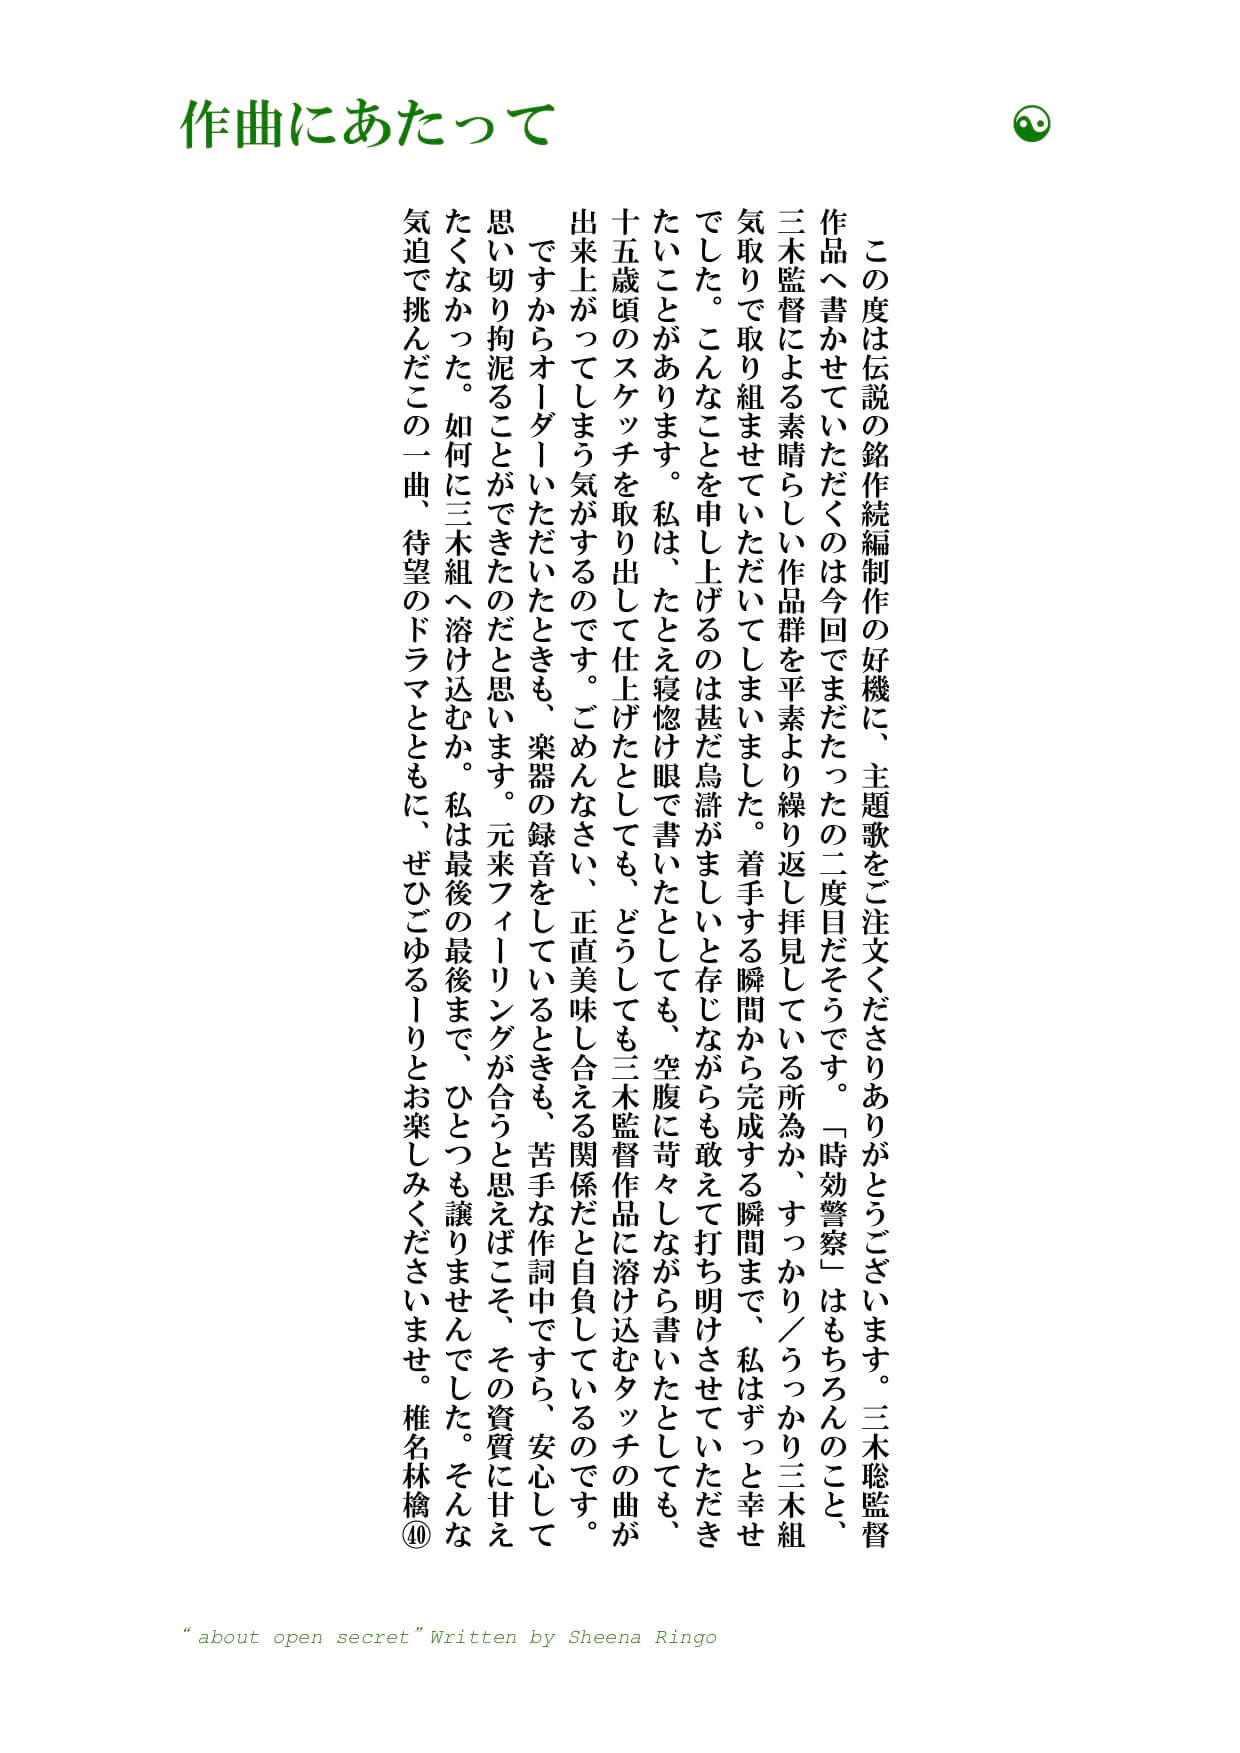 椎名林檎 ドラマ 時効警察はじめました 主題歌 公然の秘密 を書き下ろし 配信リリースも決定 Moshi Moshi Nippon もしもしにっぽん